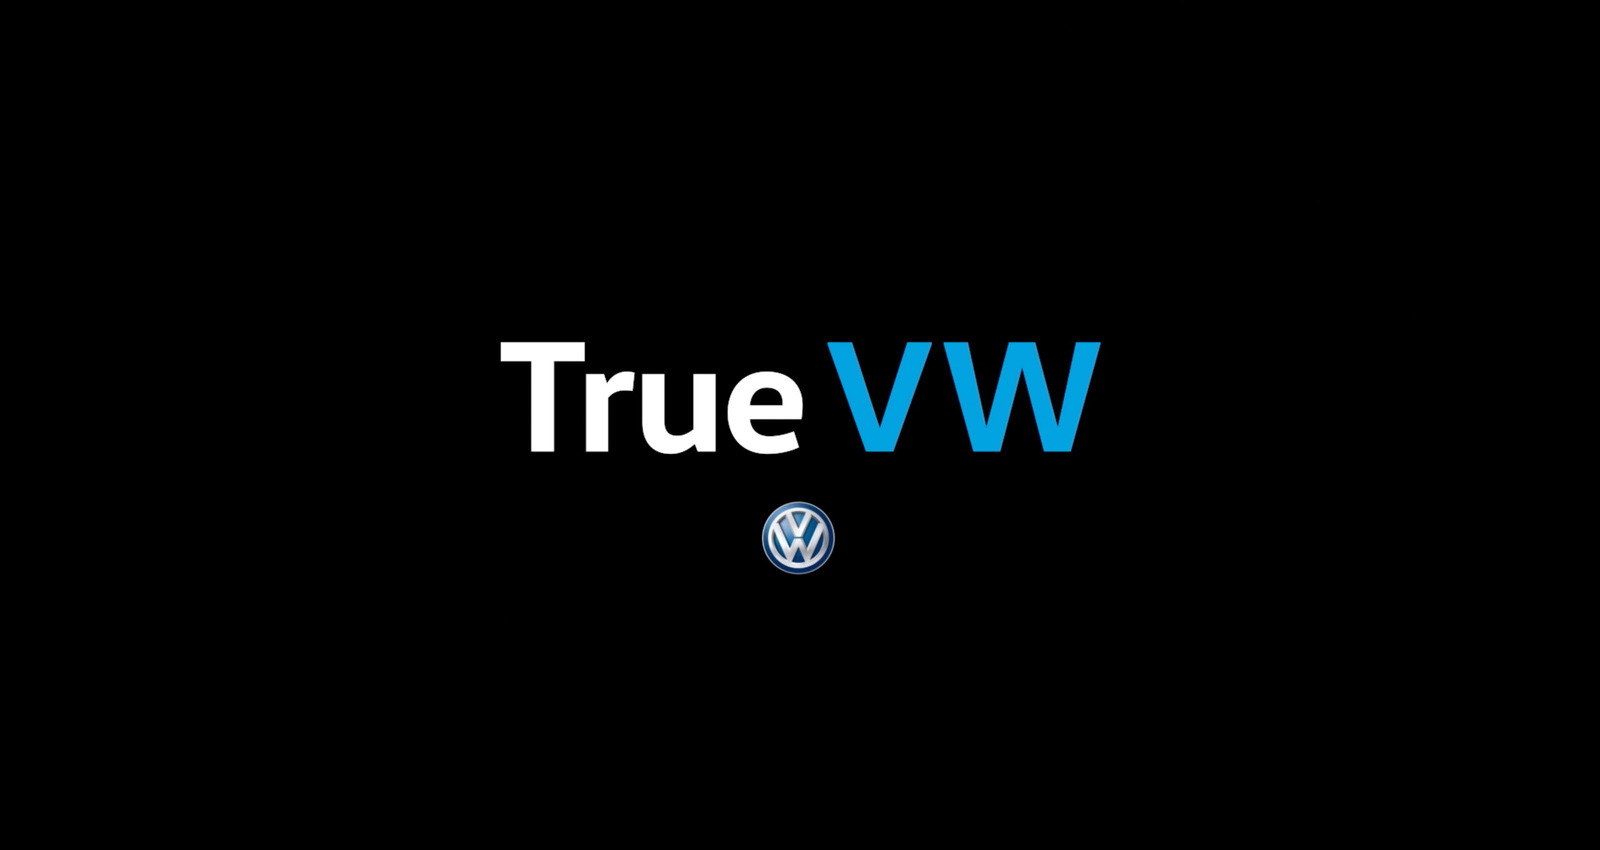 True VW